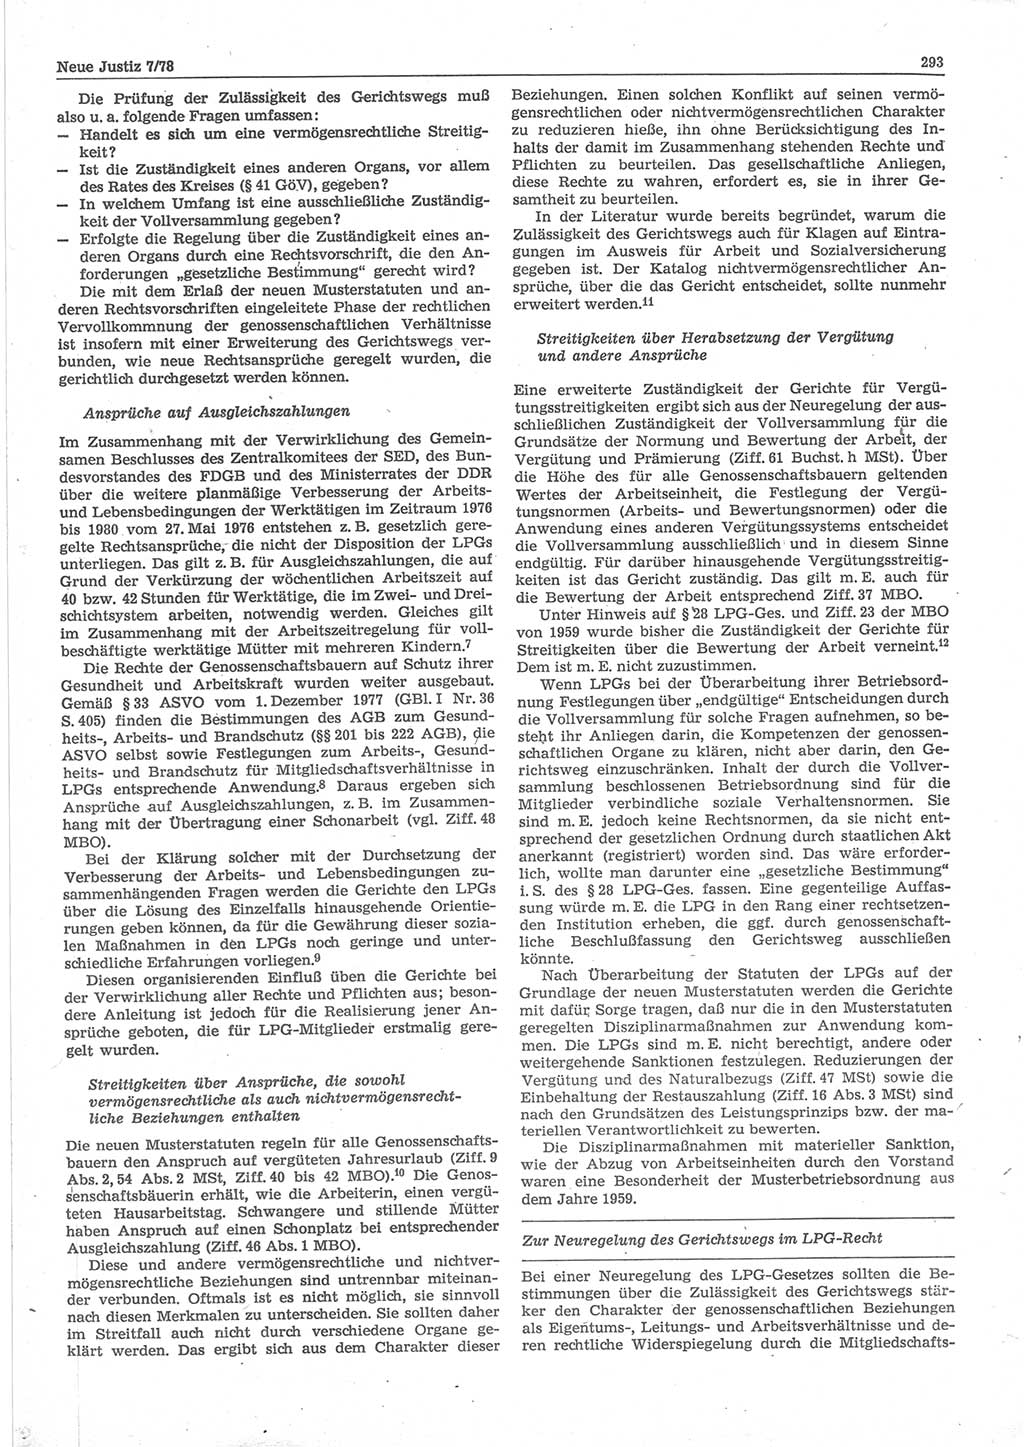 Neue Justiz (NJ), Zeitschrift für sozialistisches Recht und Gesetzlichkeit [Deutsche Demokratische Republik (DDR)], 32. Jahrgang 1978, Seite 293 (NJ DDR 1978, S. 293)